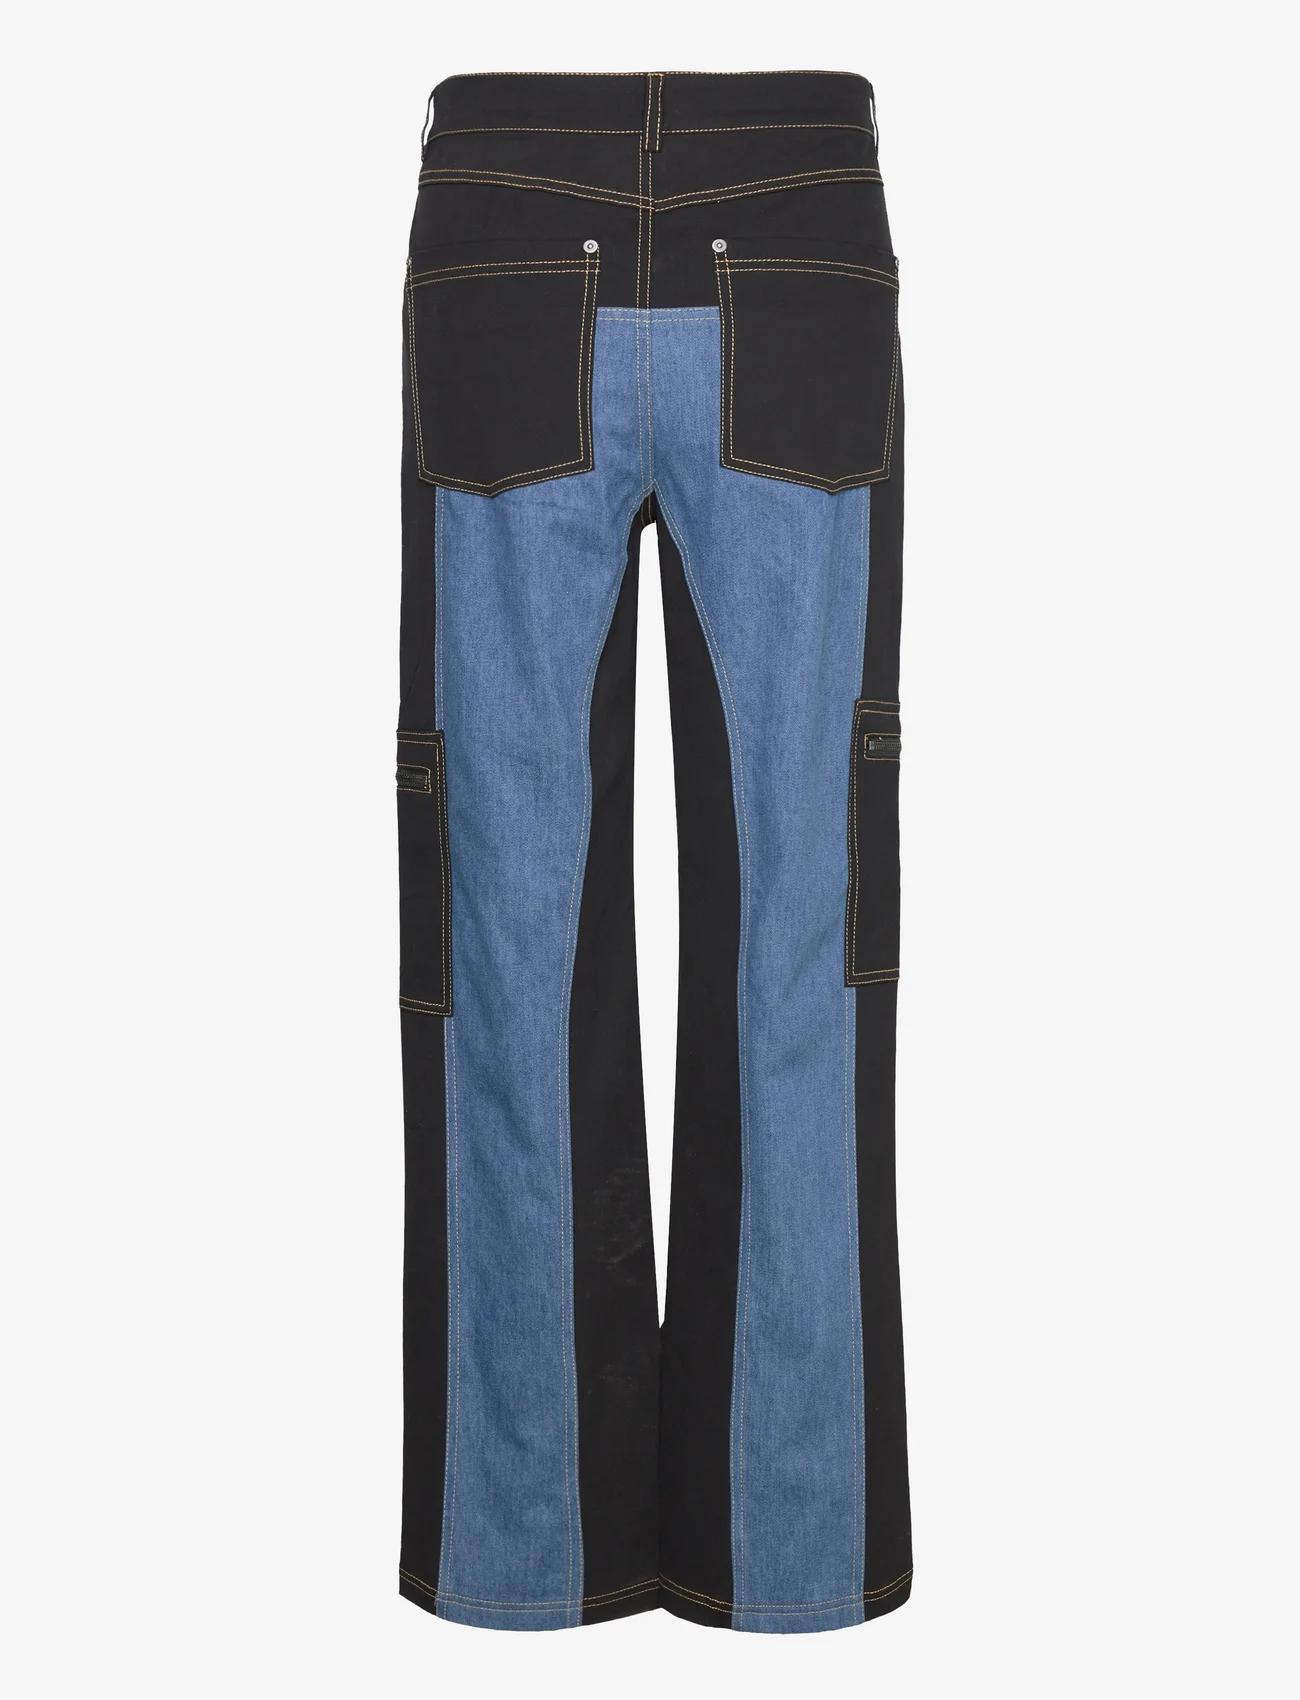 Sofie Schnoor - Trousers - jeans met wijde pijpen - black - 1